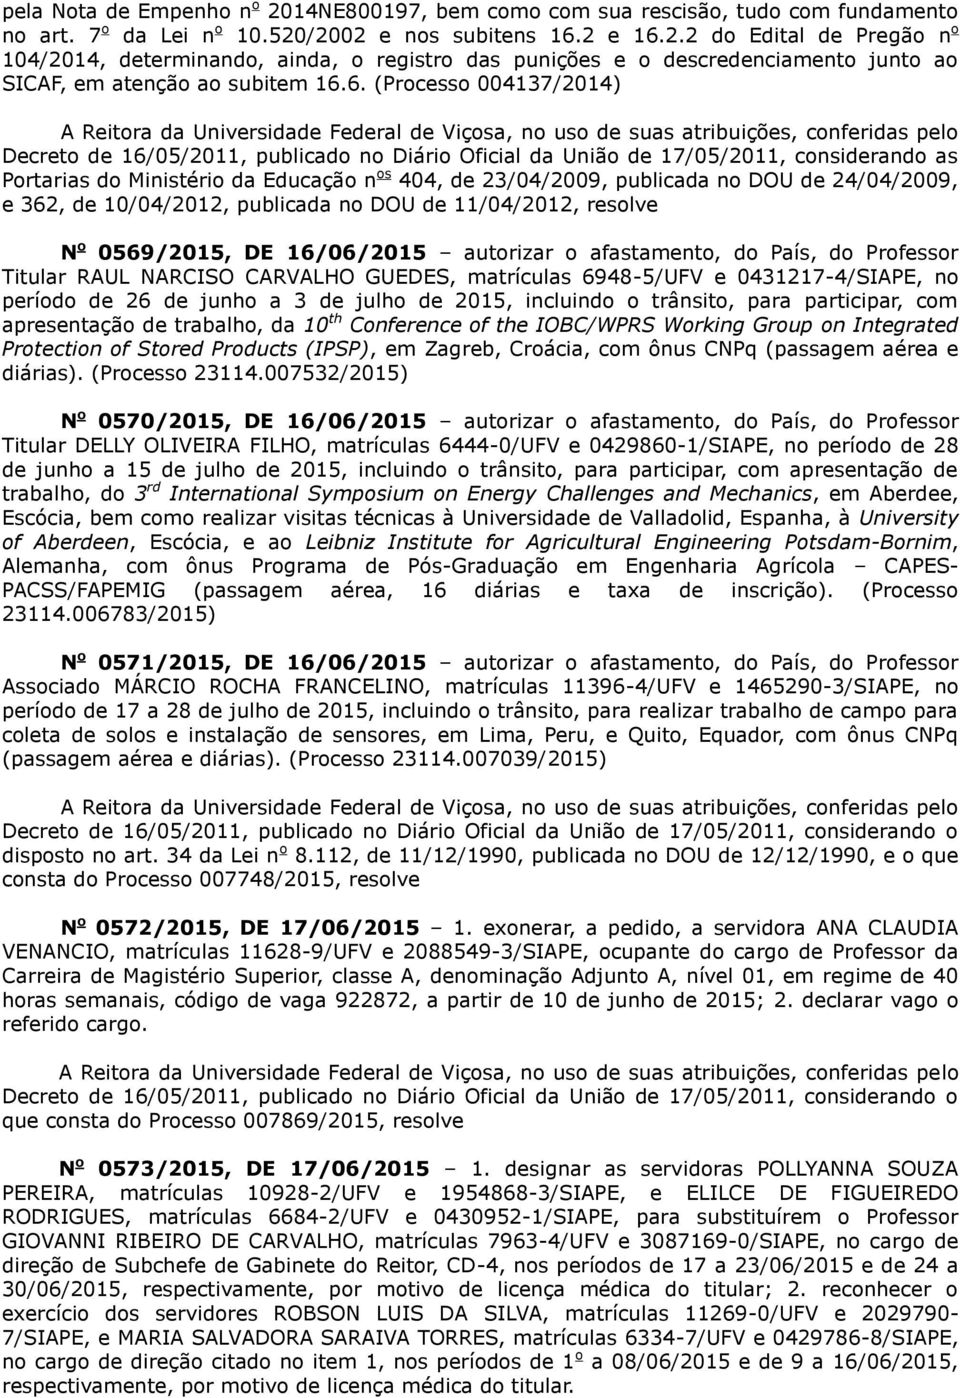 16/06/2015 autorizar o afastamento, do País, do Professor Titular RAUL NARCISO CARVALHO GUEDES, matrículas 6948-5/UFV e 0431217-4/SIAPE, no período de 26 de junho a 3 de julho de 2015, incluindo o